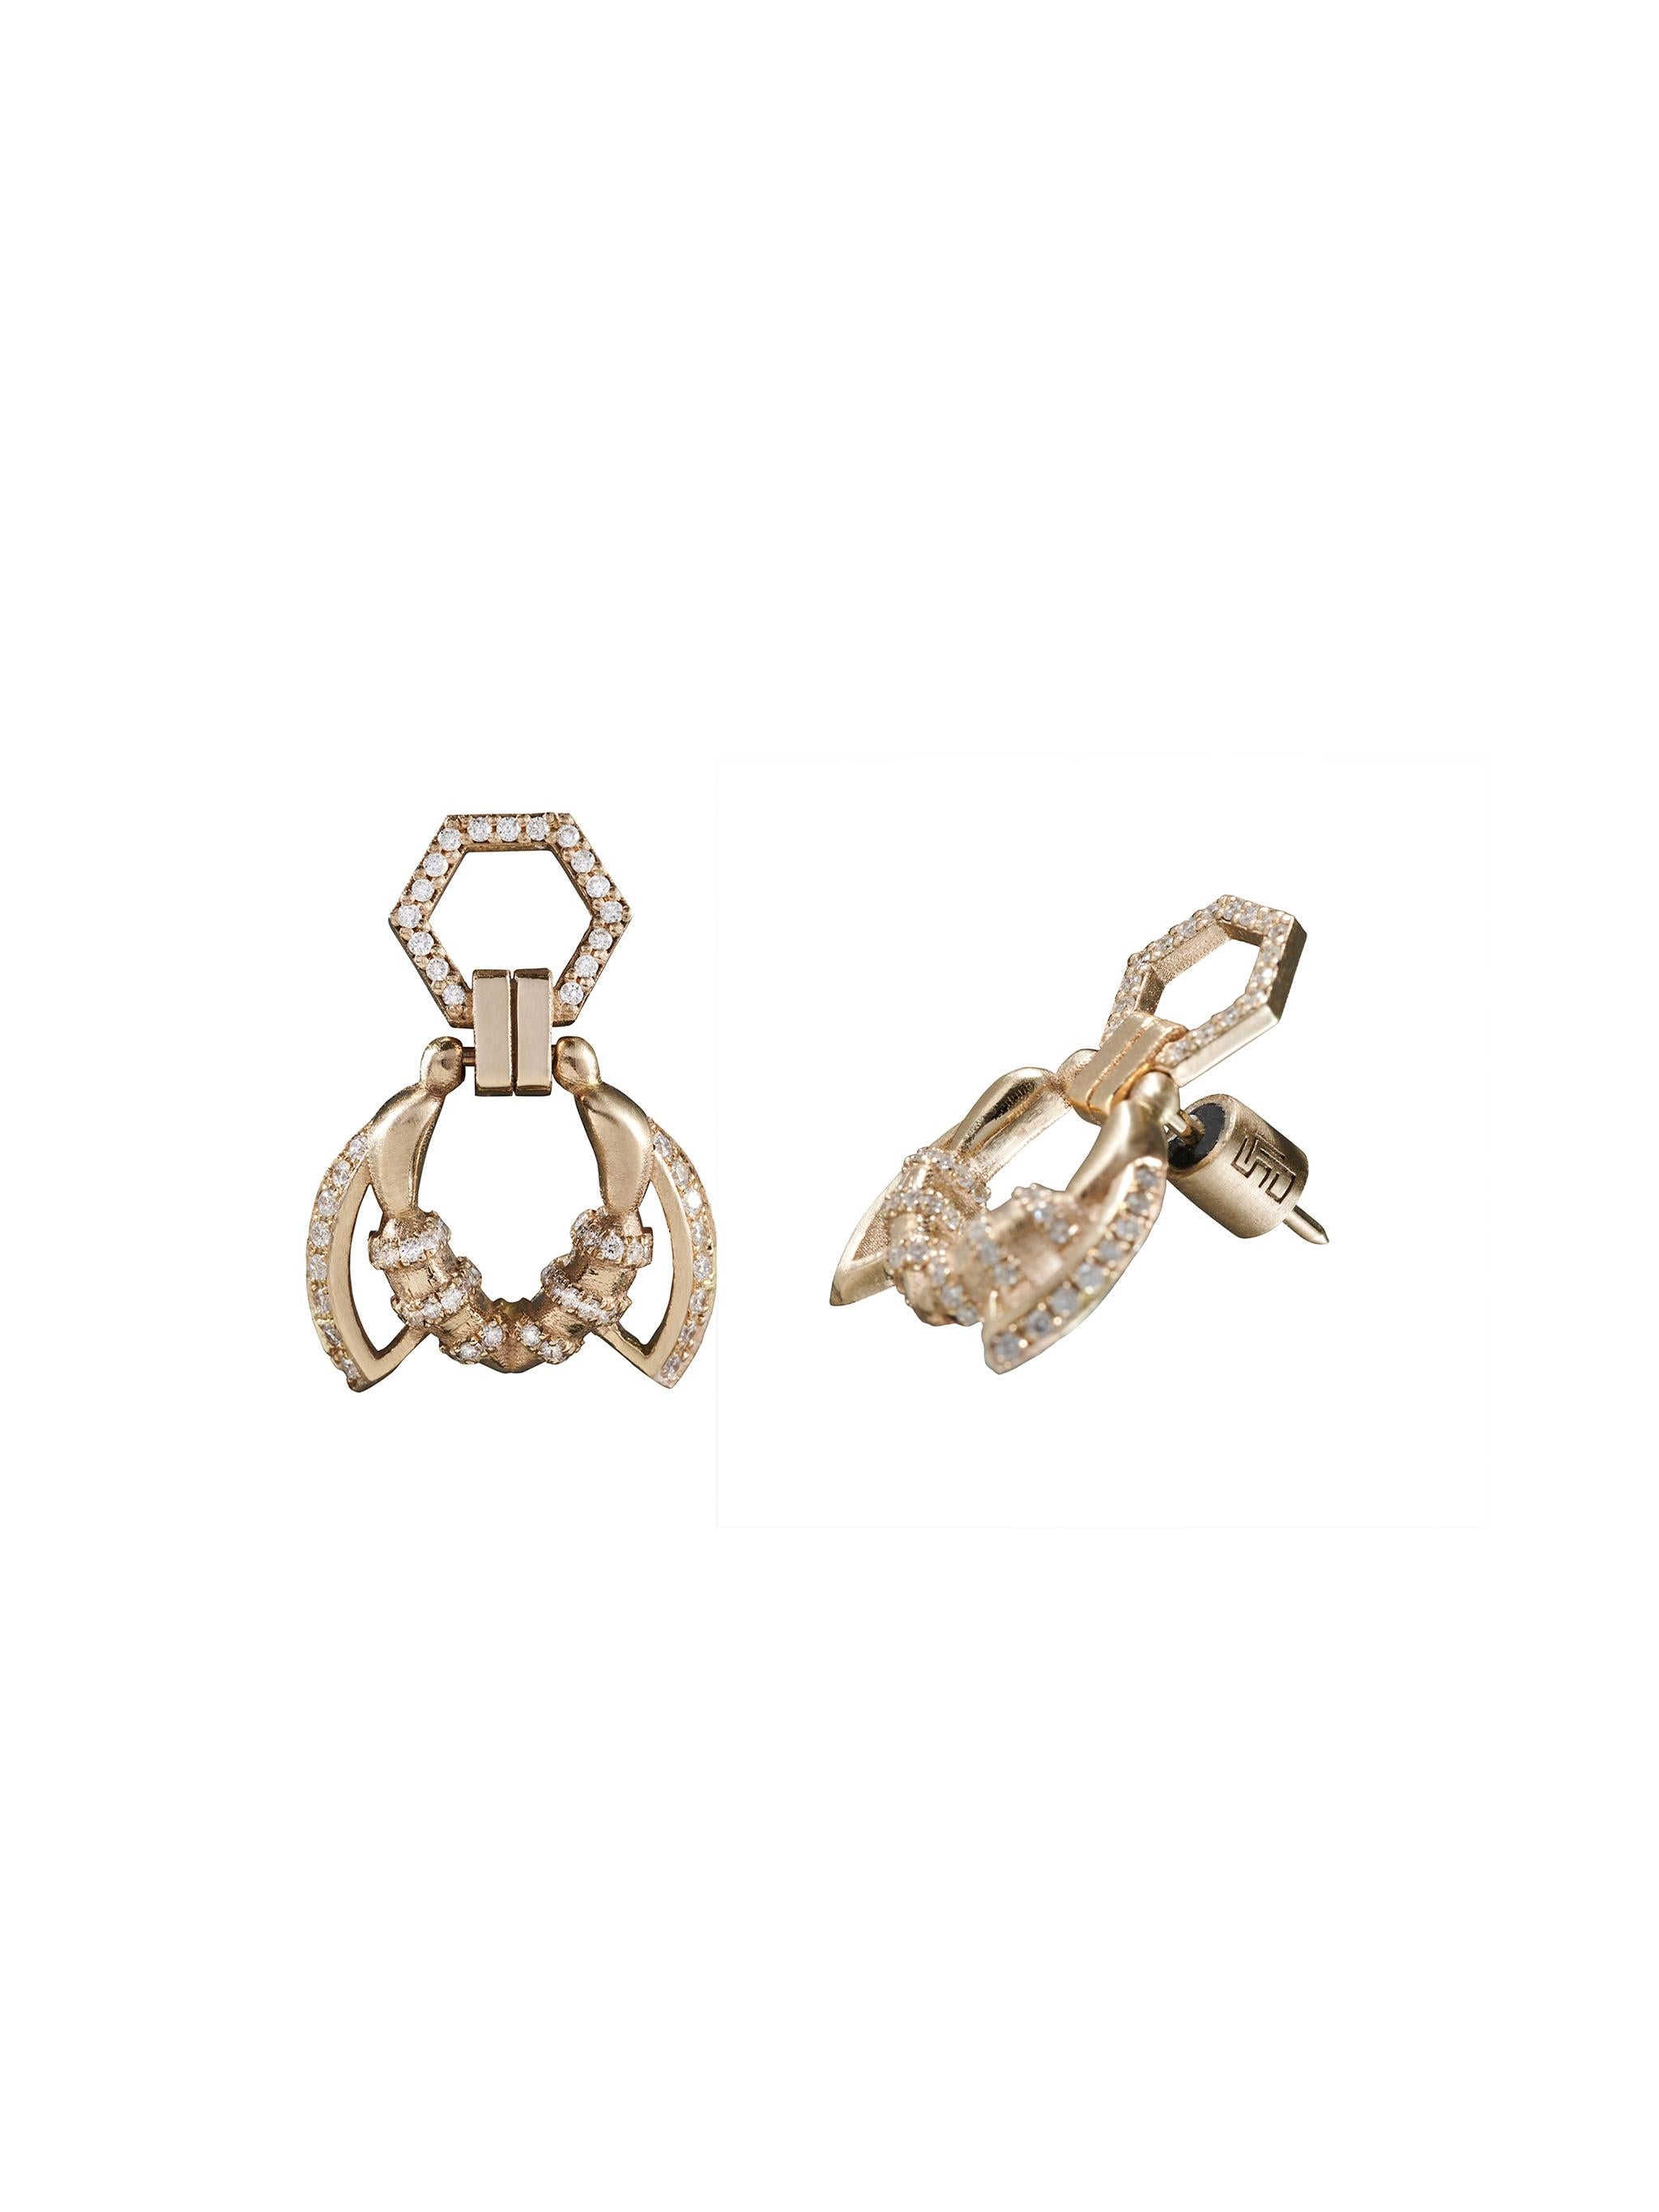 Ces boucles d'oreilles de la collection MELISSA de POLINA ELLIS sont fabriquées à la main en or blanc brut 18 carats avec des diamants blancs de taille brillant de 0,52 carat.
Longueur : 2,20cm
Largeur : 1,55 cm